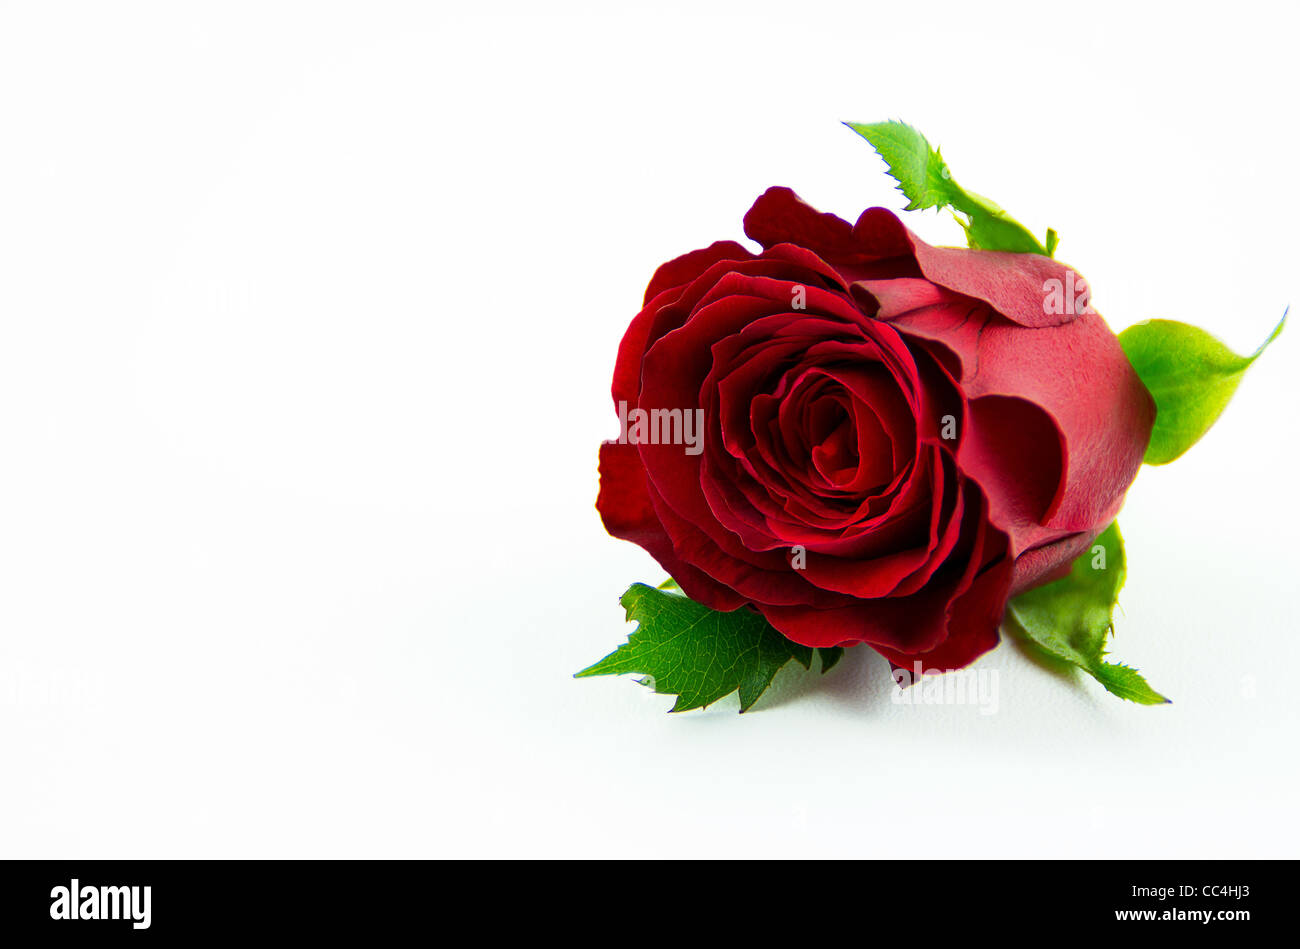 Floral Rosa roja en inglés Foto de stock